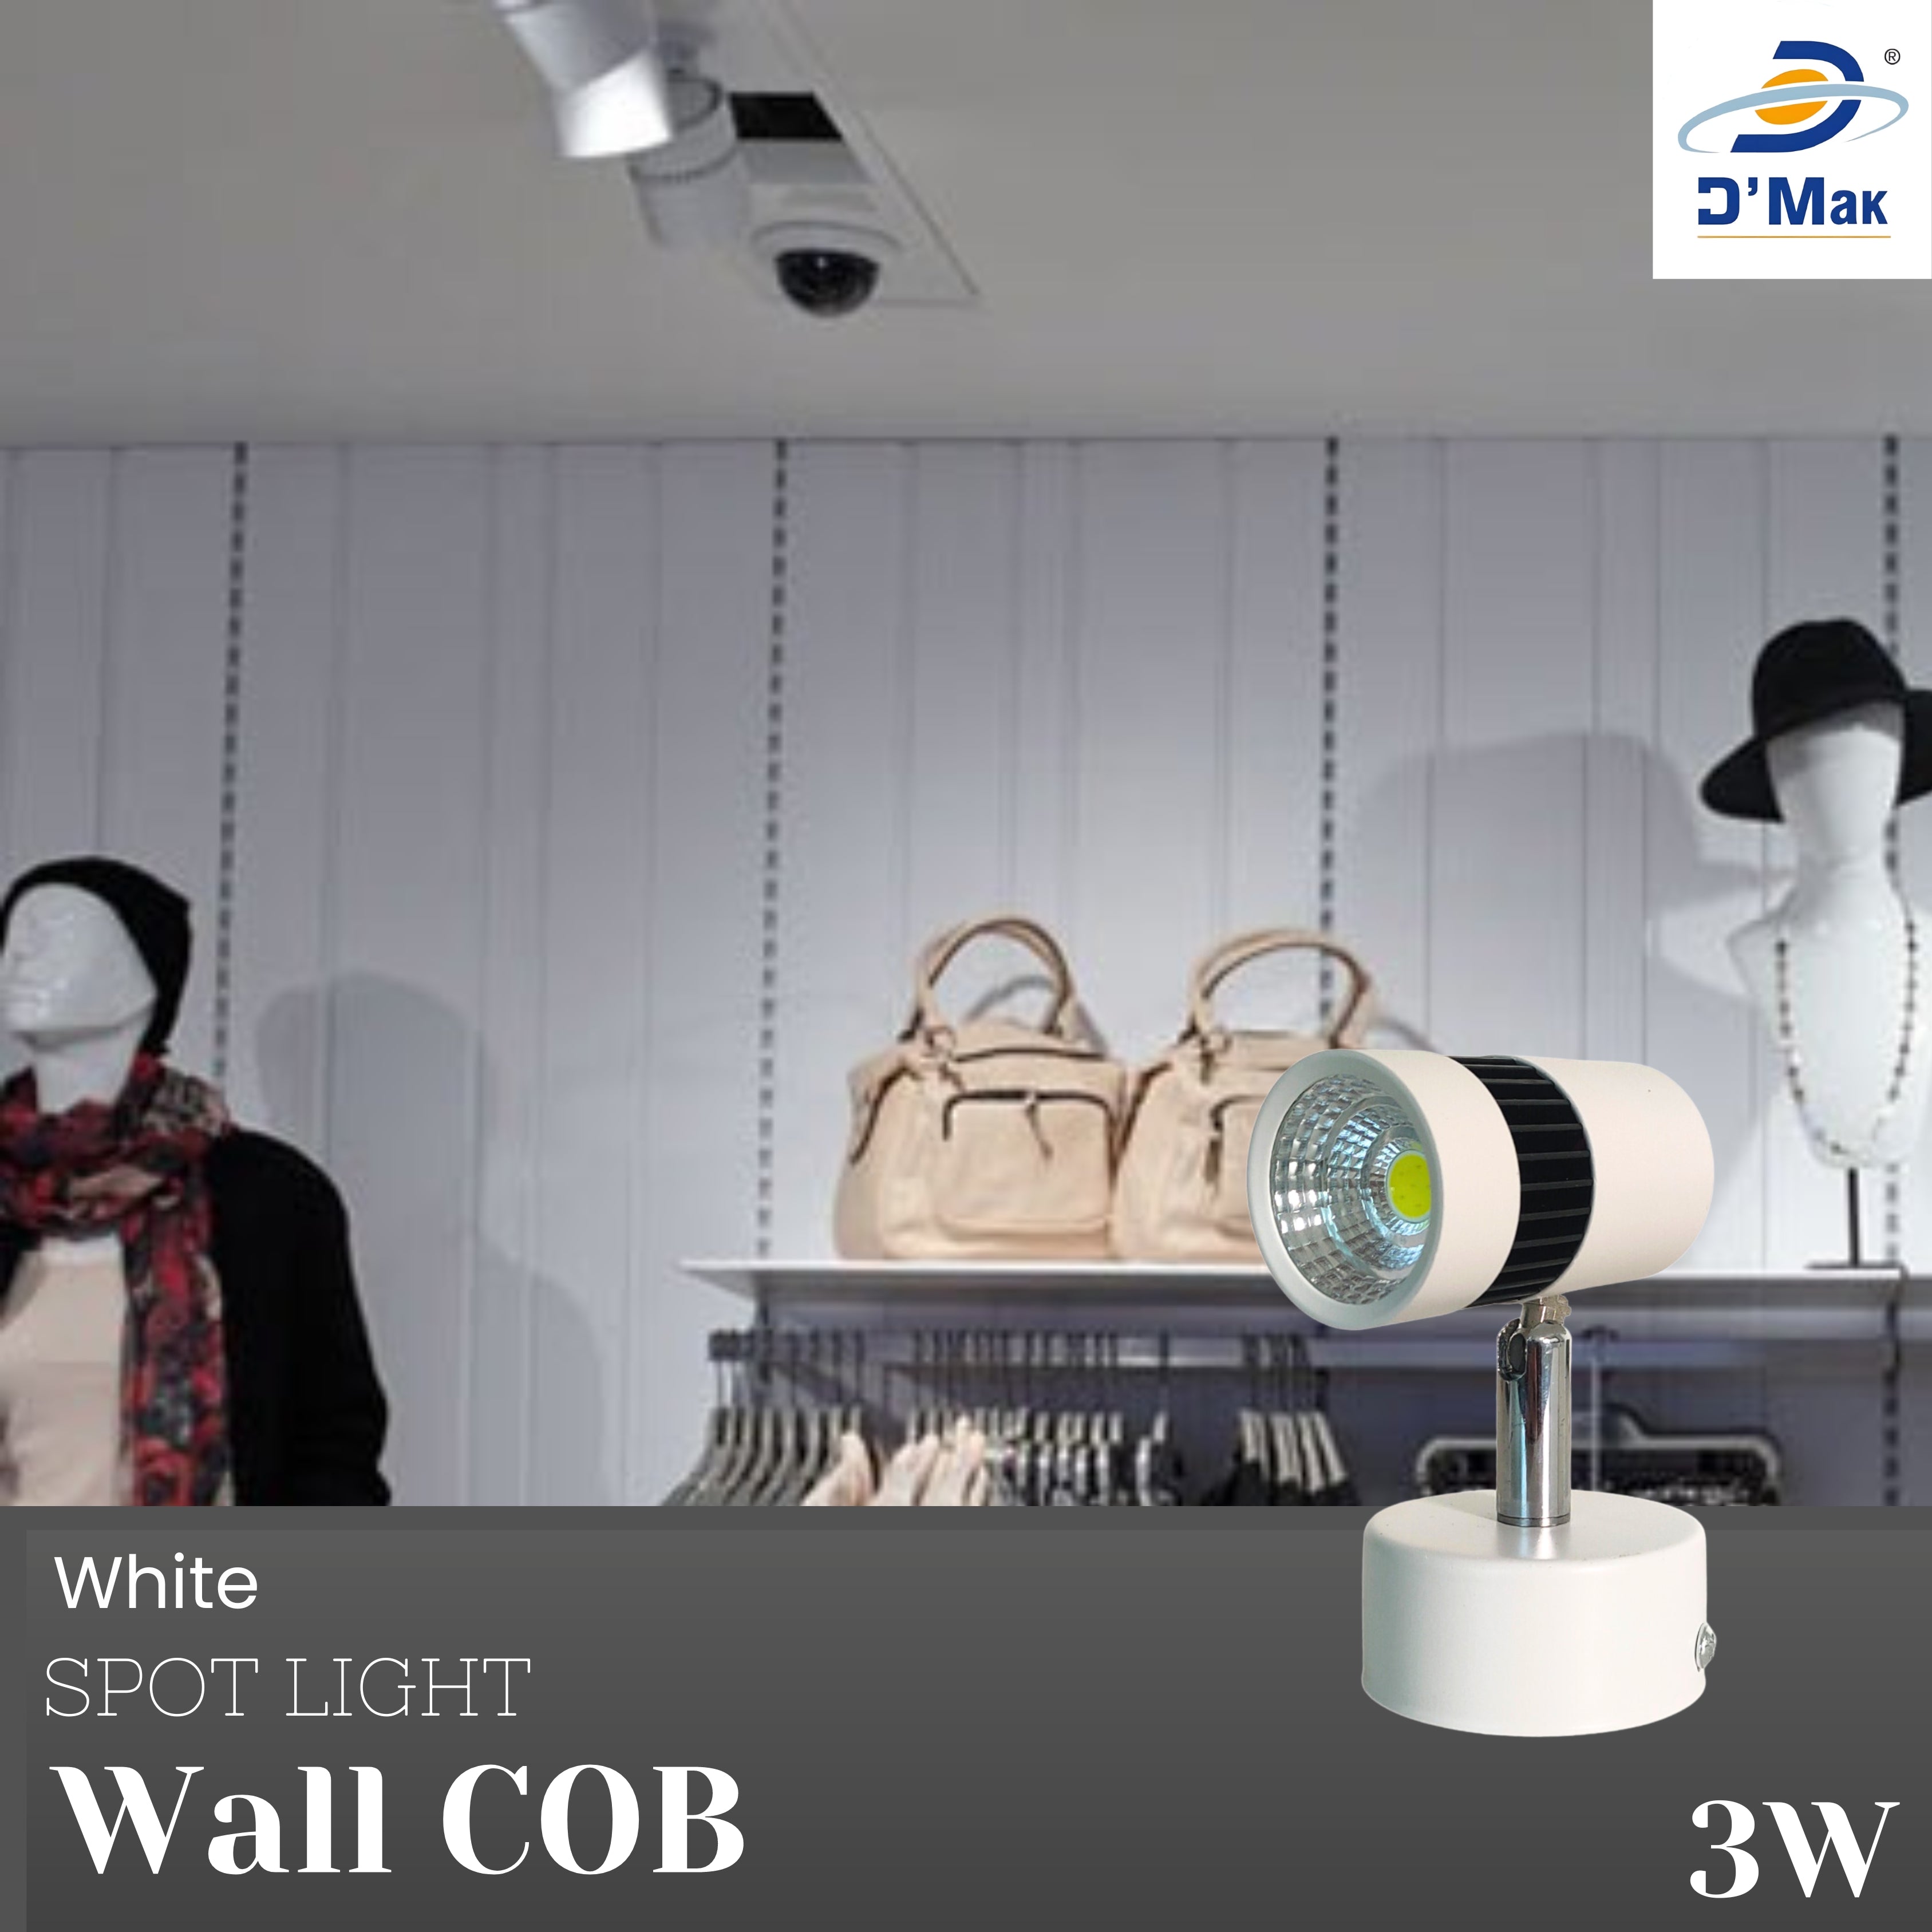 3 Watt Led White Body Wall Light for focusing wall or photo frame